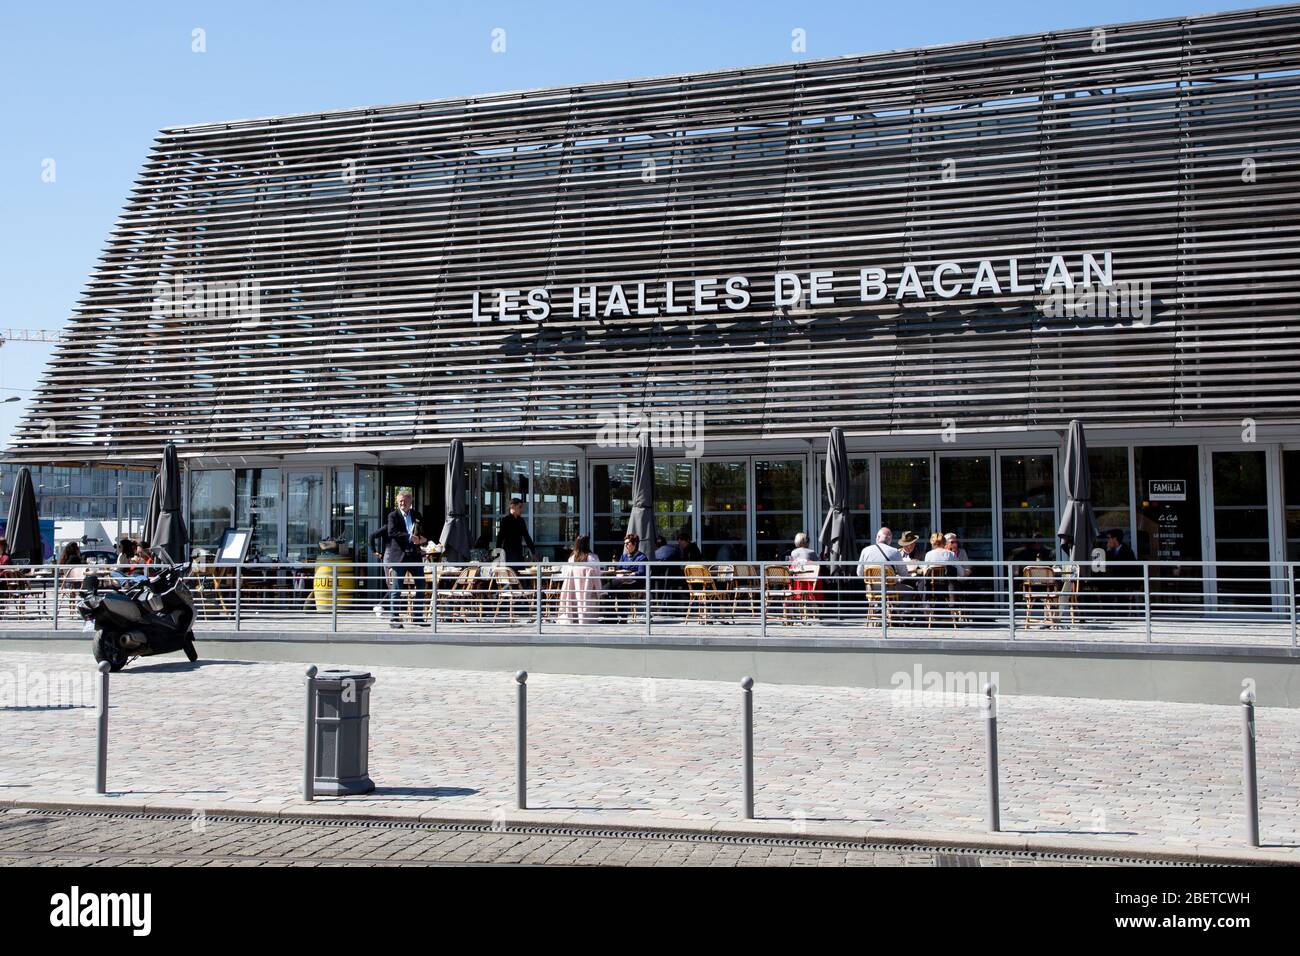 Bordeaux Nouvelle Aquitaine / France - 03 28 2019 : halles de Bacalan covered market bordeaux Stock Photo